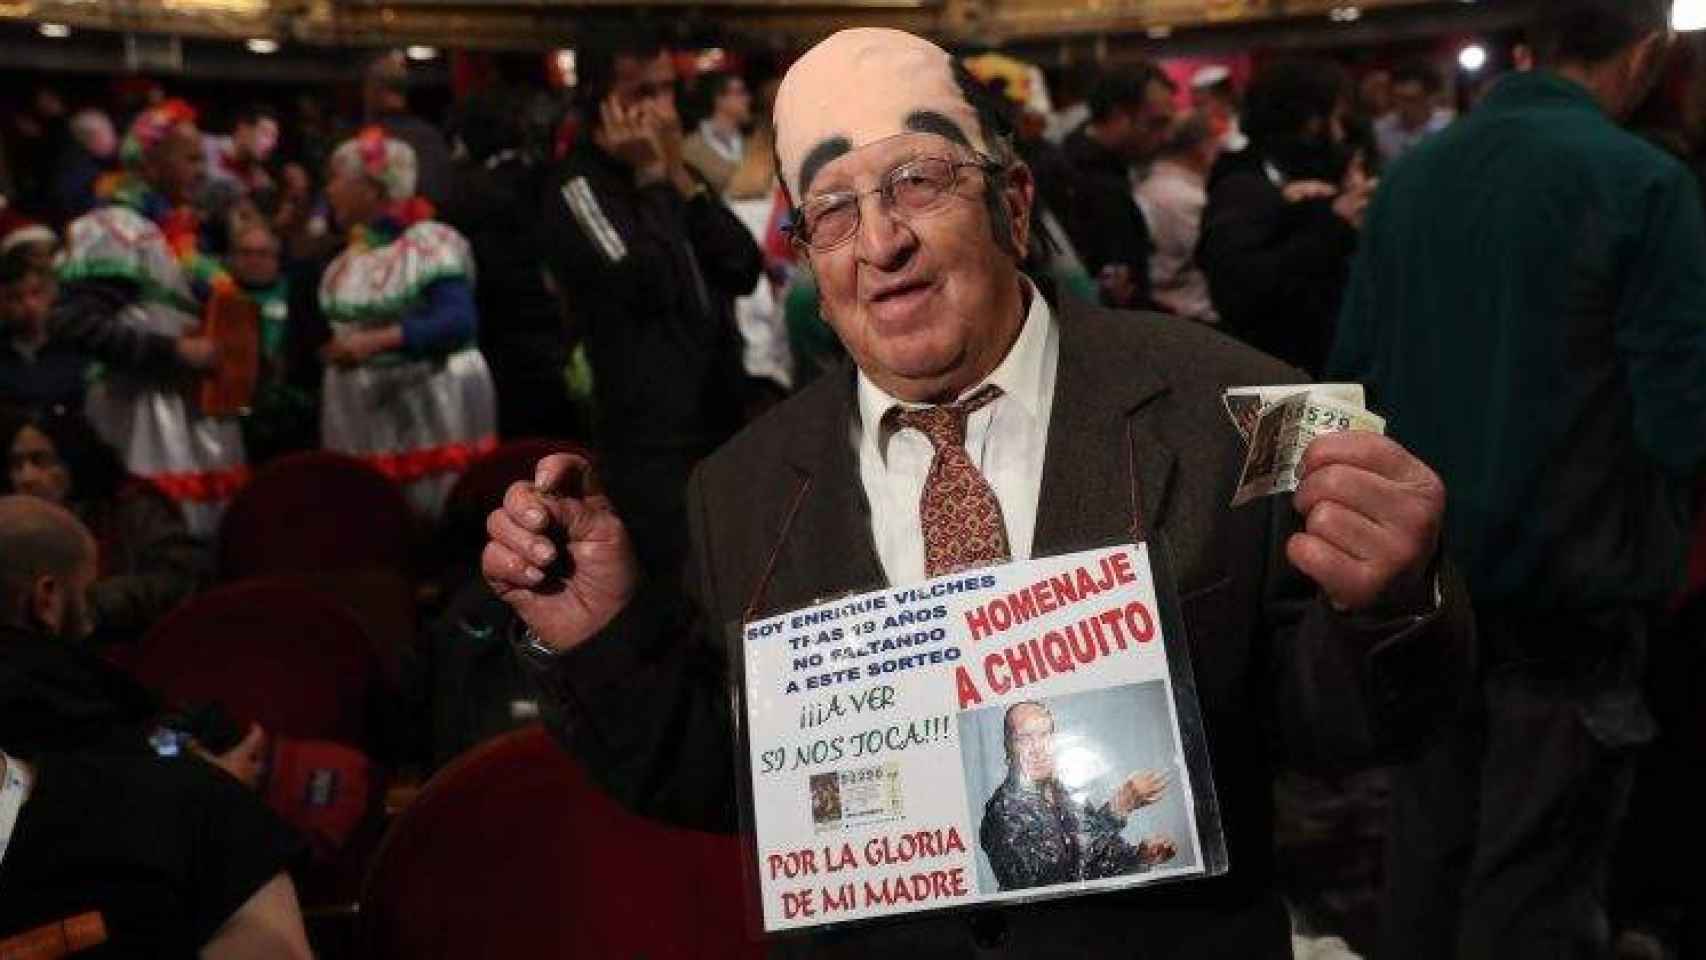 El hombre disfrazado de Chiquito de la Calzada en el Teatro Real de Madrid / CD